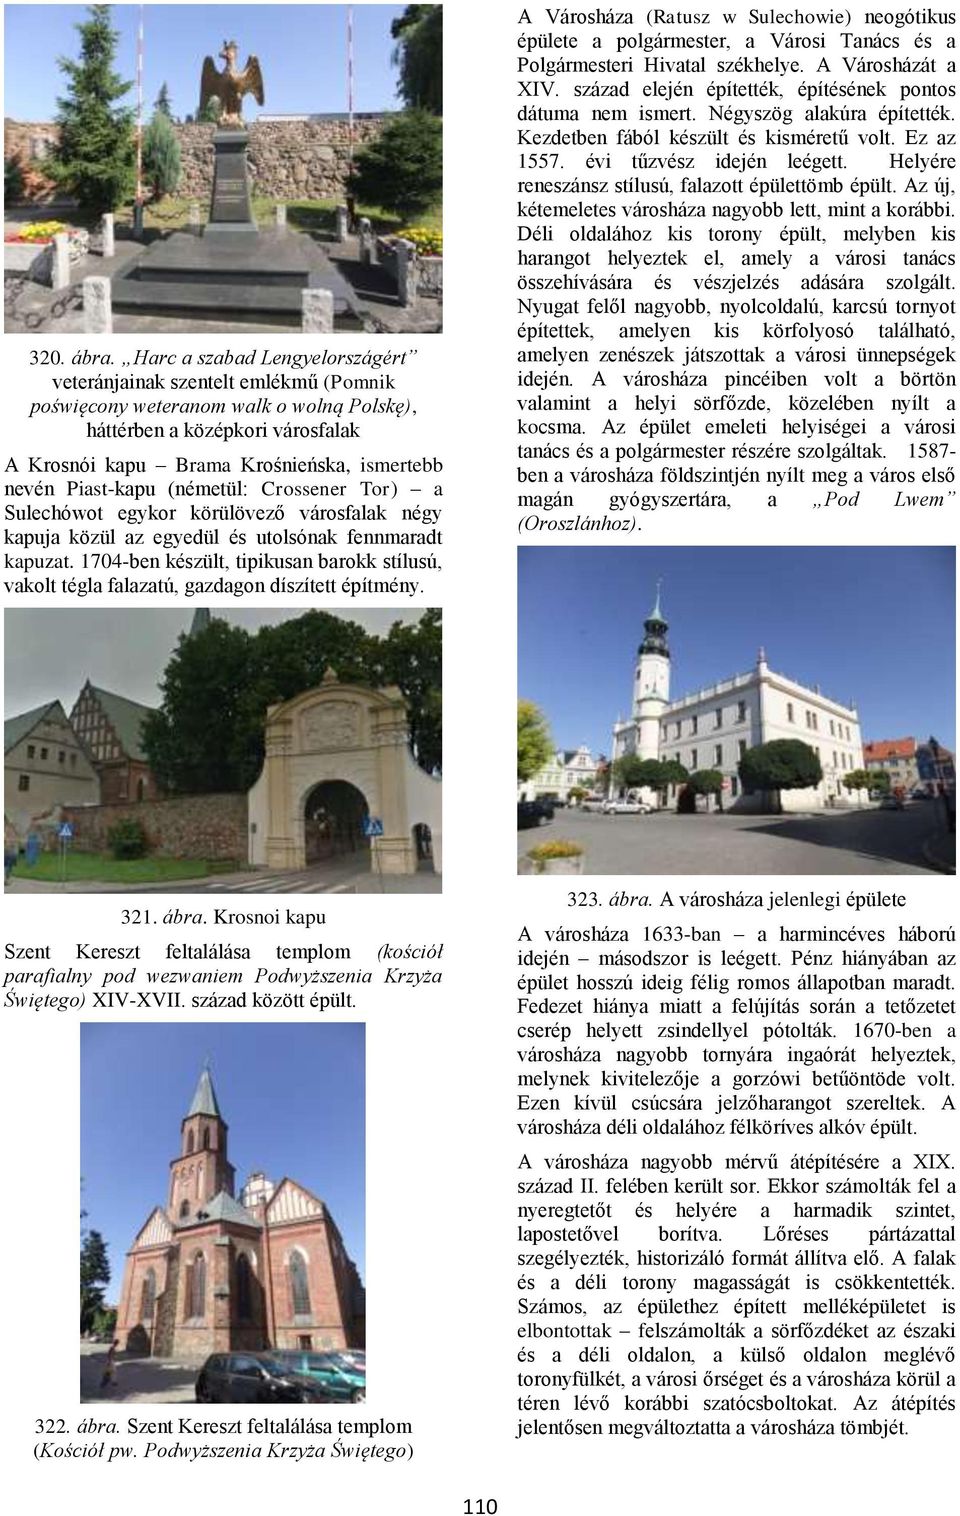 Piast-kapu (németül: Crossener Tor) a Sulechówot egykor körülövező városfalak négy kapuja közül az egyedül és utolsónak fennmaradt kapuzat.